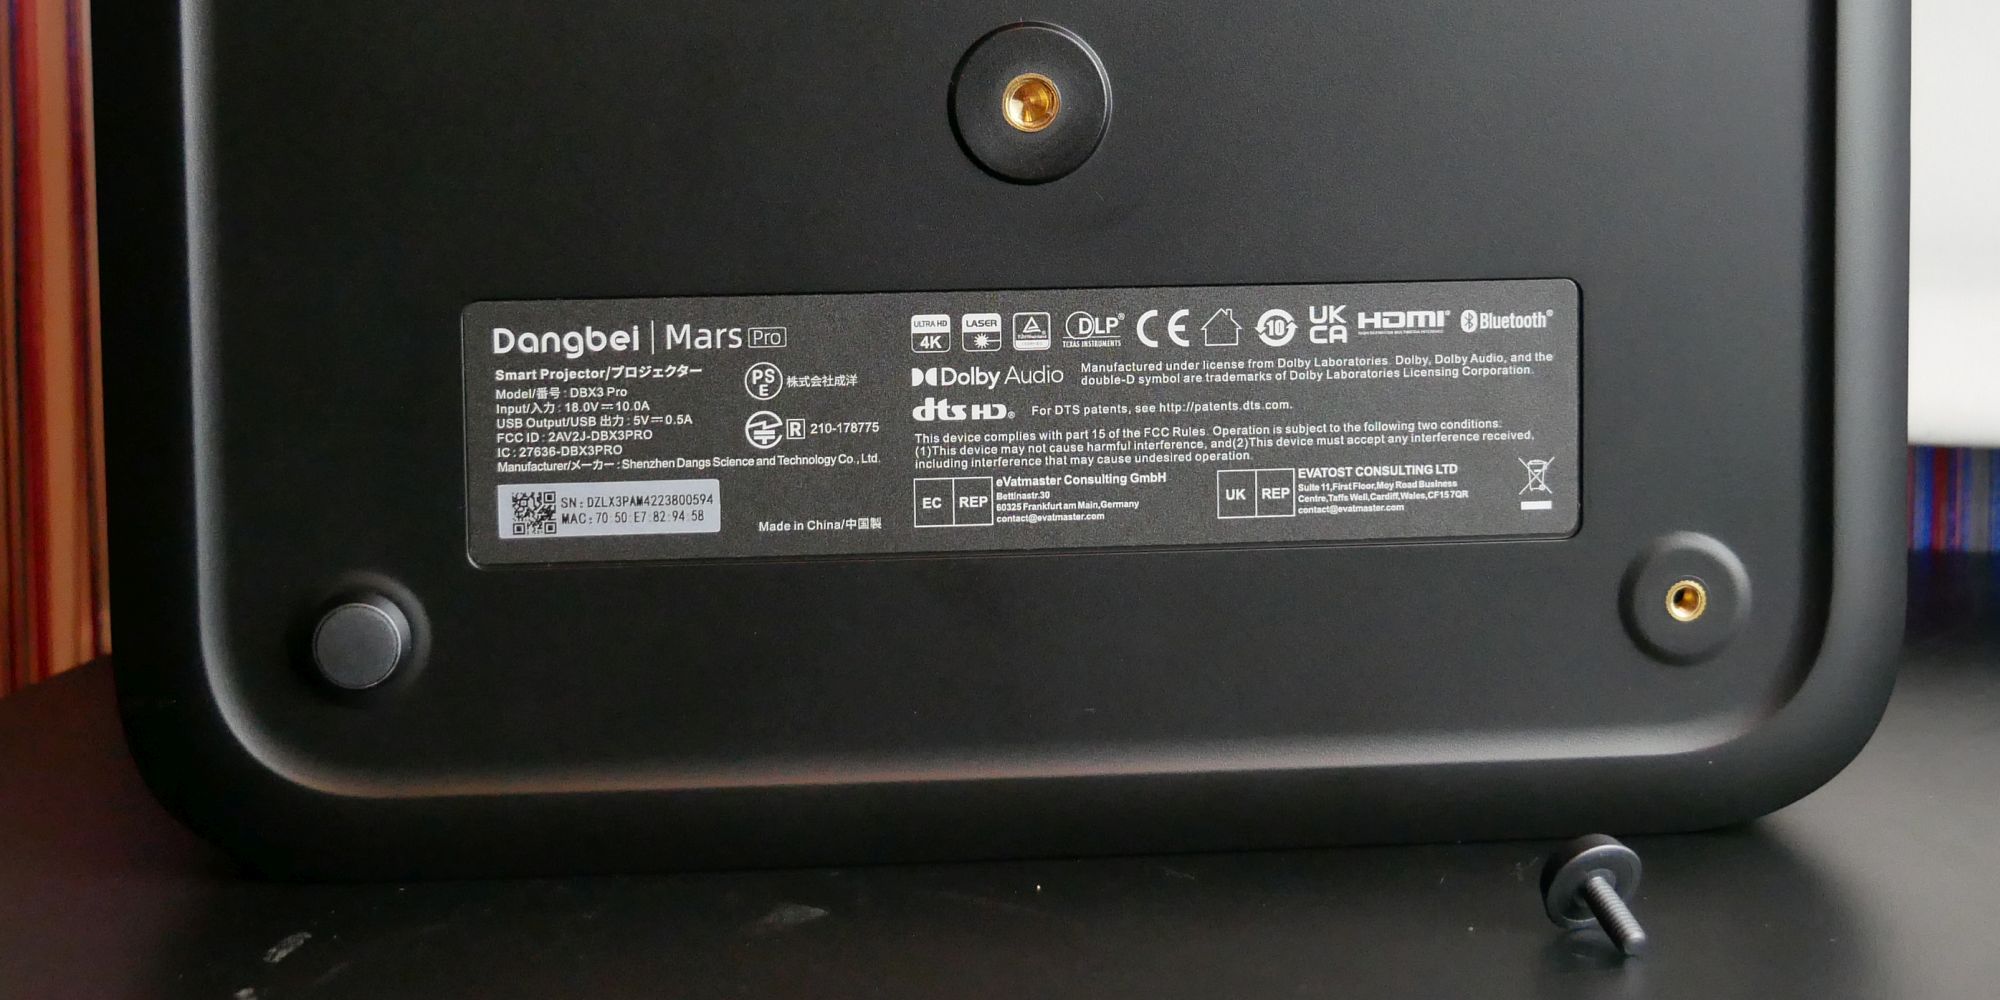 Dangbei Mars Pro 4K UHD ALPD Smart Laser Projector 3D Keystone HDR10  (4GB+128GB)